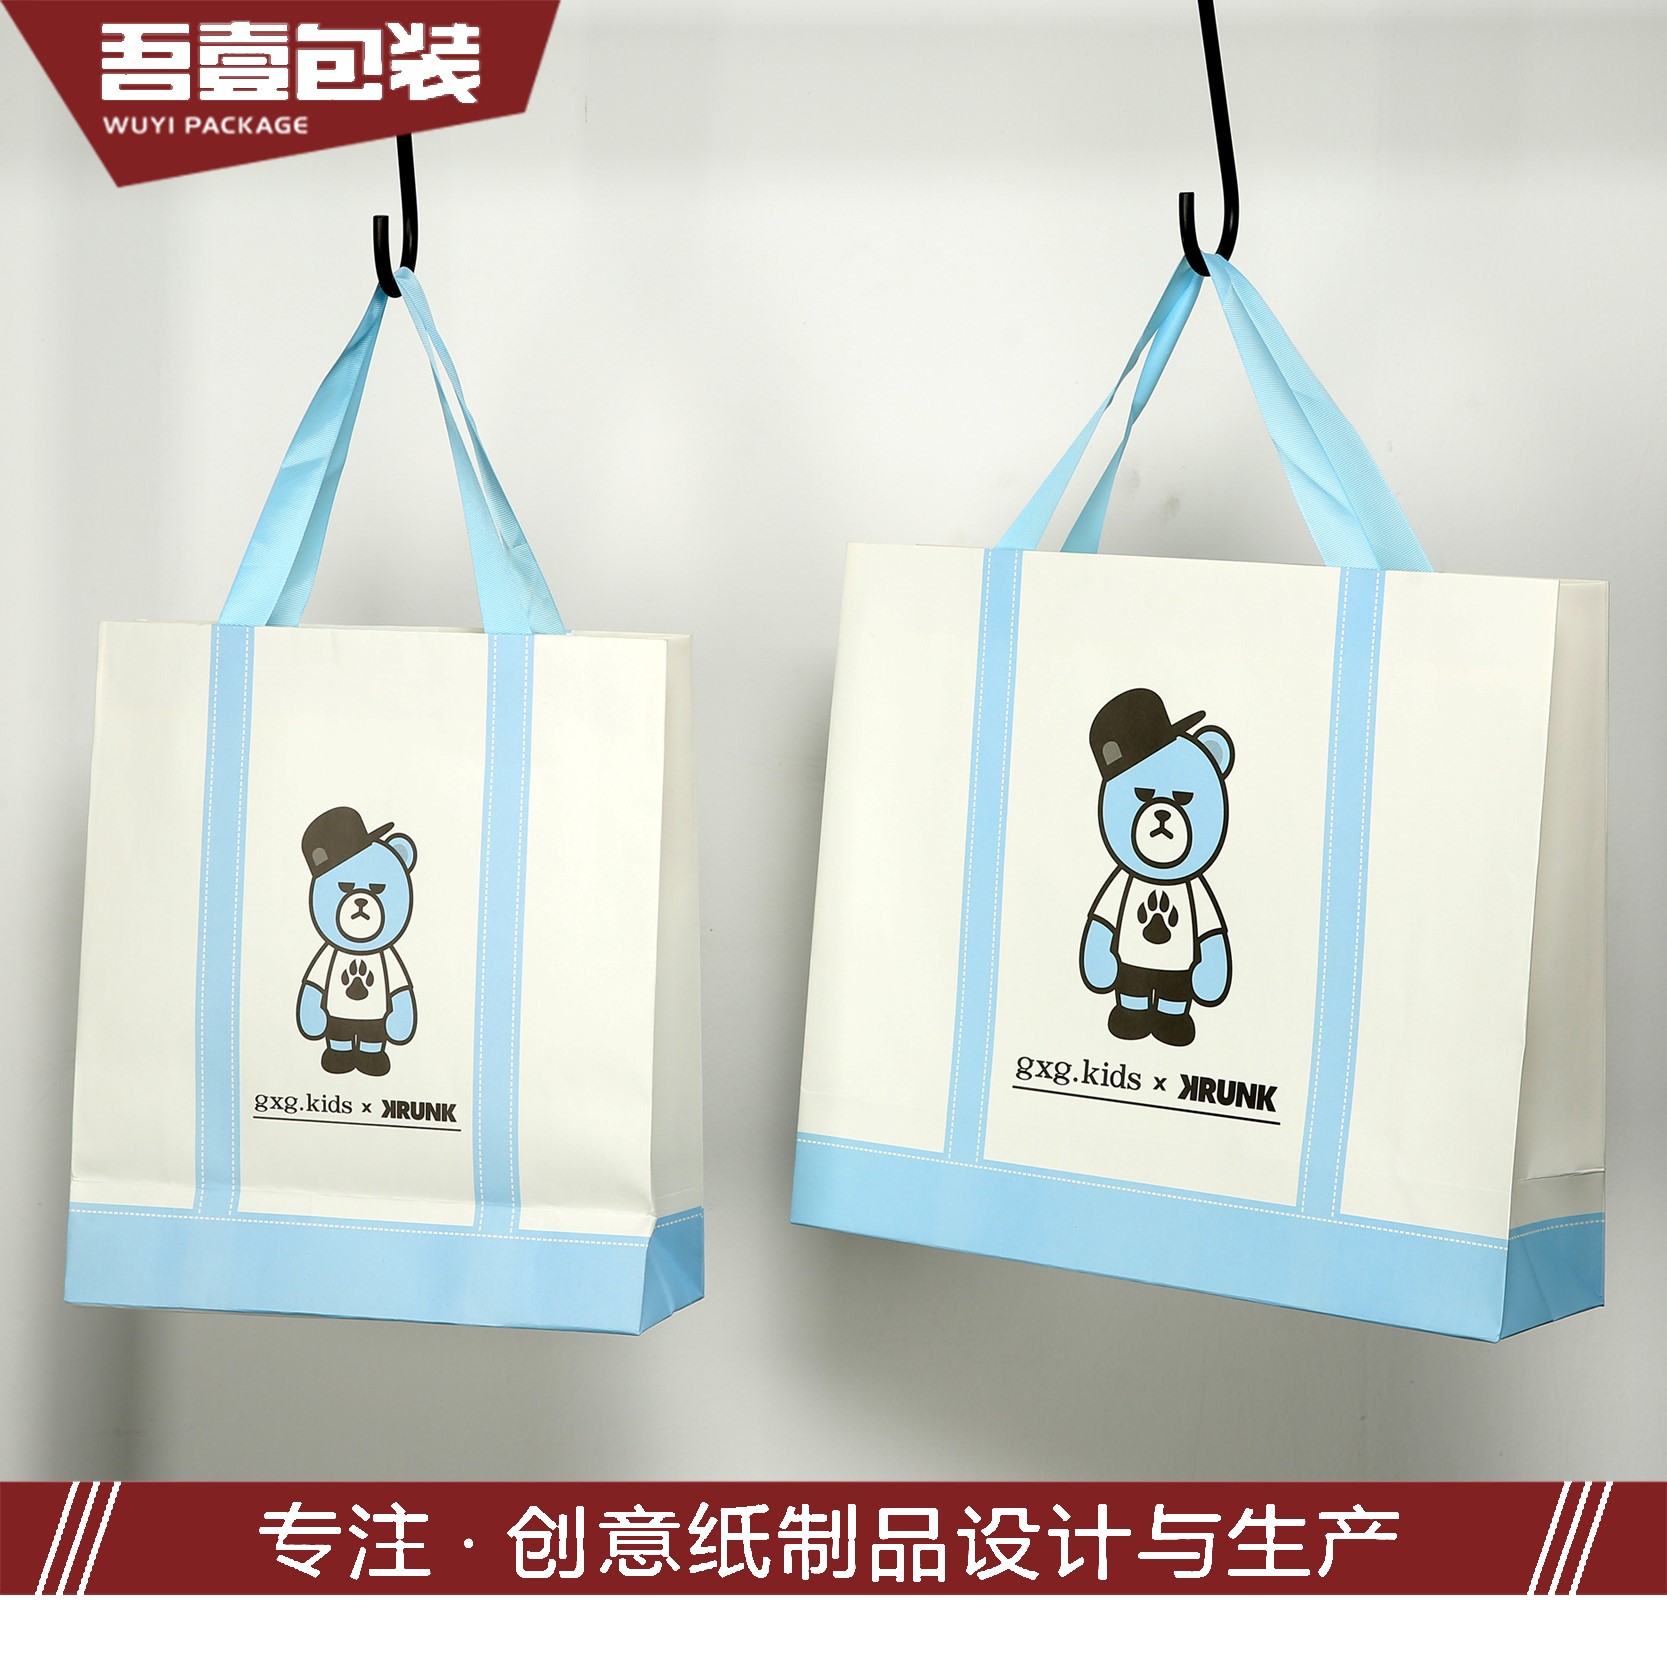 苏州吾壹包装彩印有限公司将参加奢侈品包装展